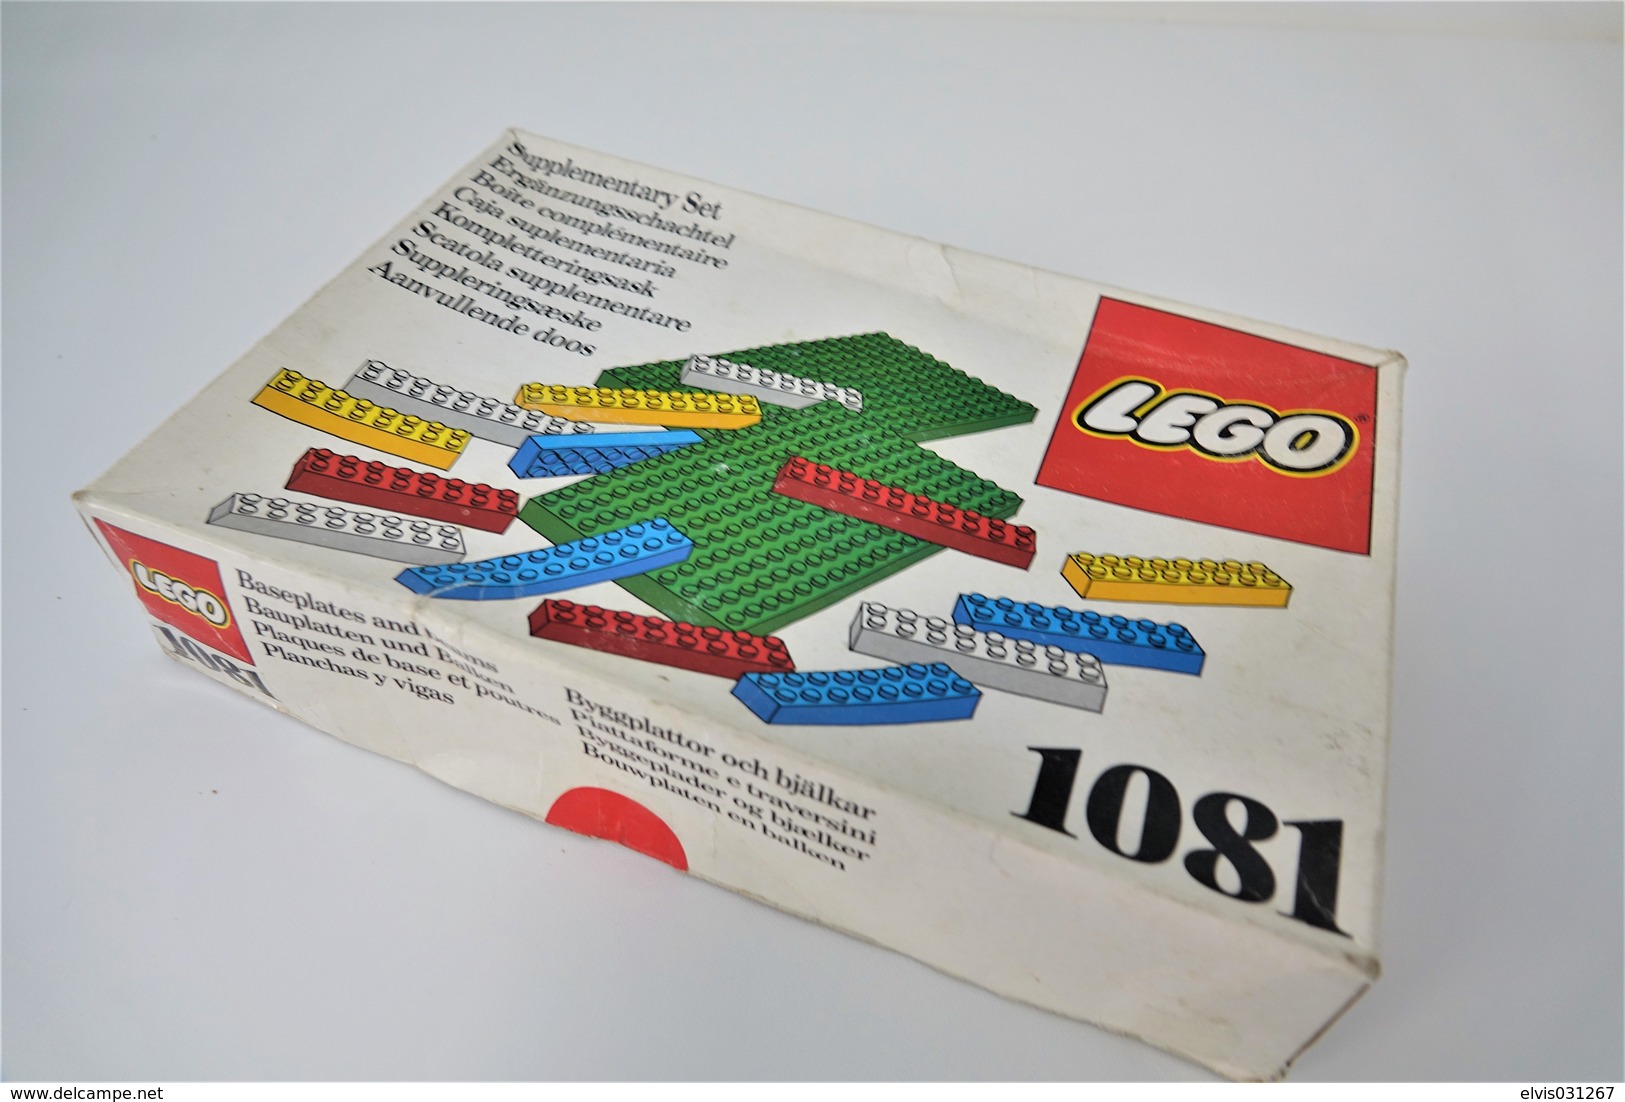 LEGO - 1081 Supplementary Box - Very Rare - Original Box - Original Lego 1976 - Vintage - Catalogs